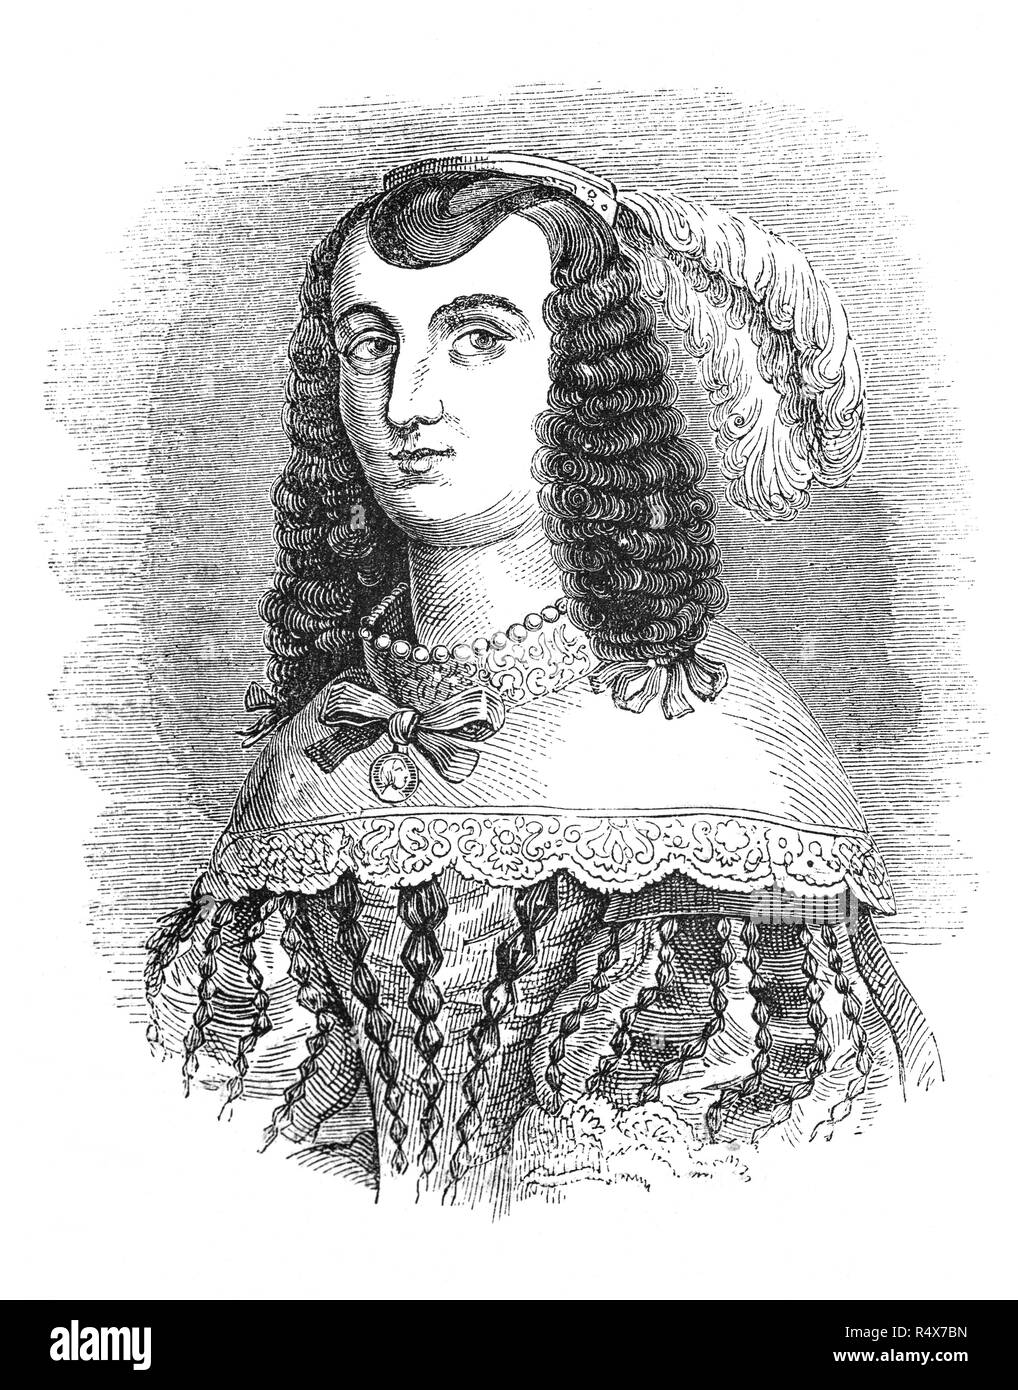 Catalina de Braganza (1638-1705) fue reina consorte de Inglaterra, de Escocia y de Irlanda desde 1662 a 1685, como la esposa del rey Carlos II, pero no produjo herederos para el rey, habiendo sufrido tres abortos. Ella era la hija del rey Juan IV, quien se convirtió en el primer rey de Portugal de la casa de Braganza en 1640. Sin embargo, debido a su devoción a la fe católica en la que había sido levantada, Catherine era impopular en Inglaterra, pero es acreditado con la introducción de los británicos a beber té, que luego fue generalizada entre la nobleza portuguesa. Foto de stock